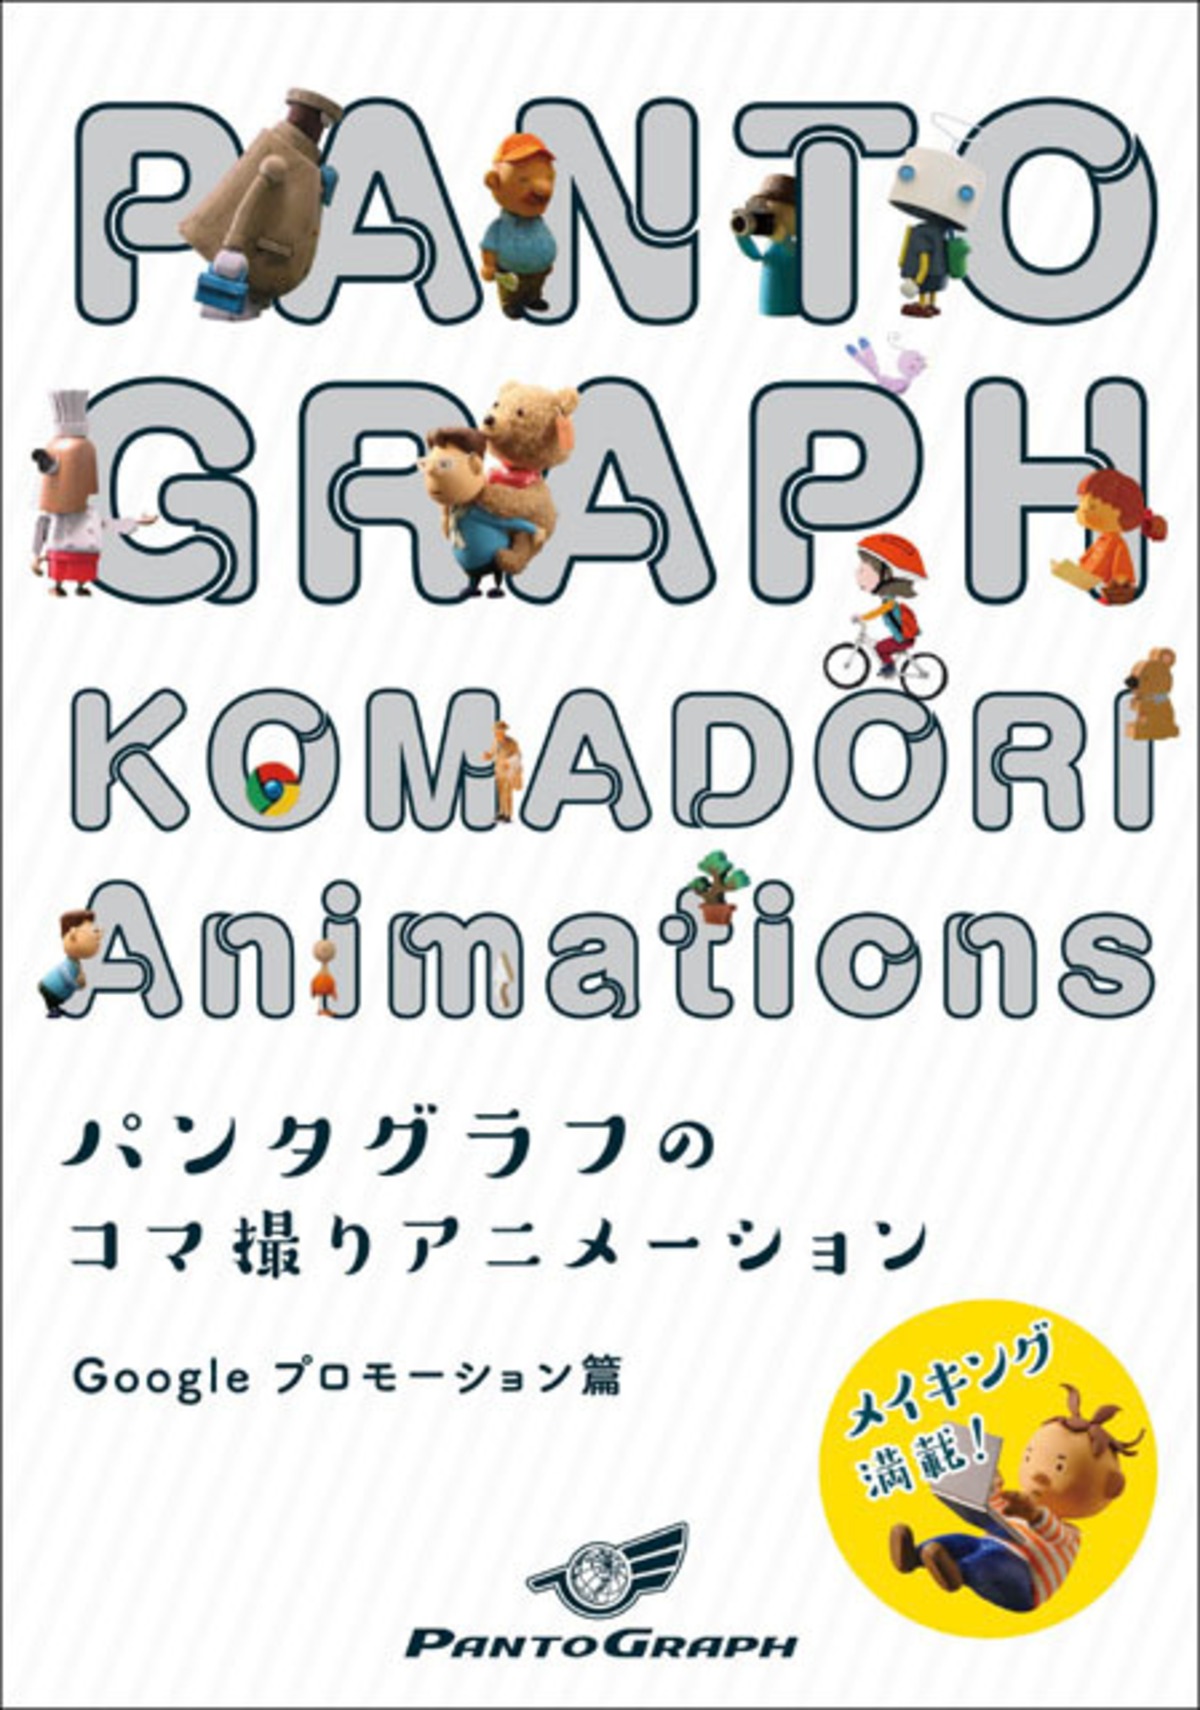 電子書籍 パンタグラフのコマ撮りアニメーション Googleプロモーション篇 Pantograph Store